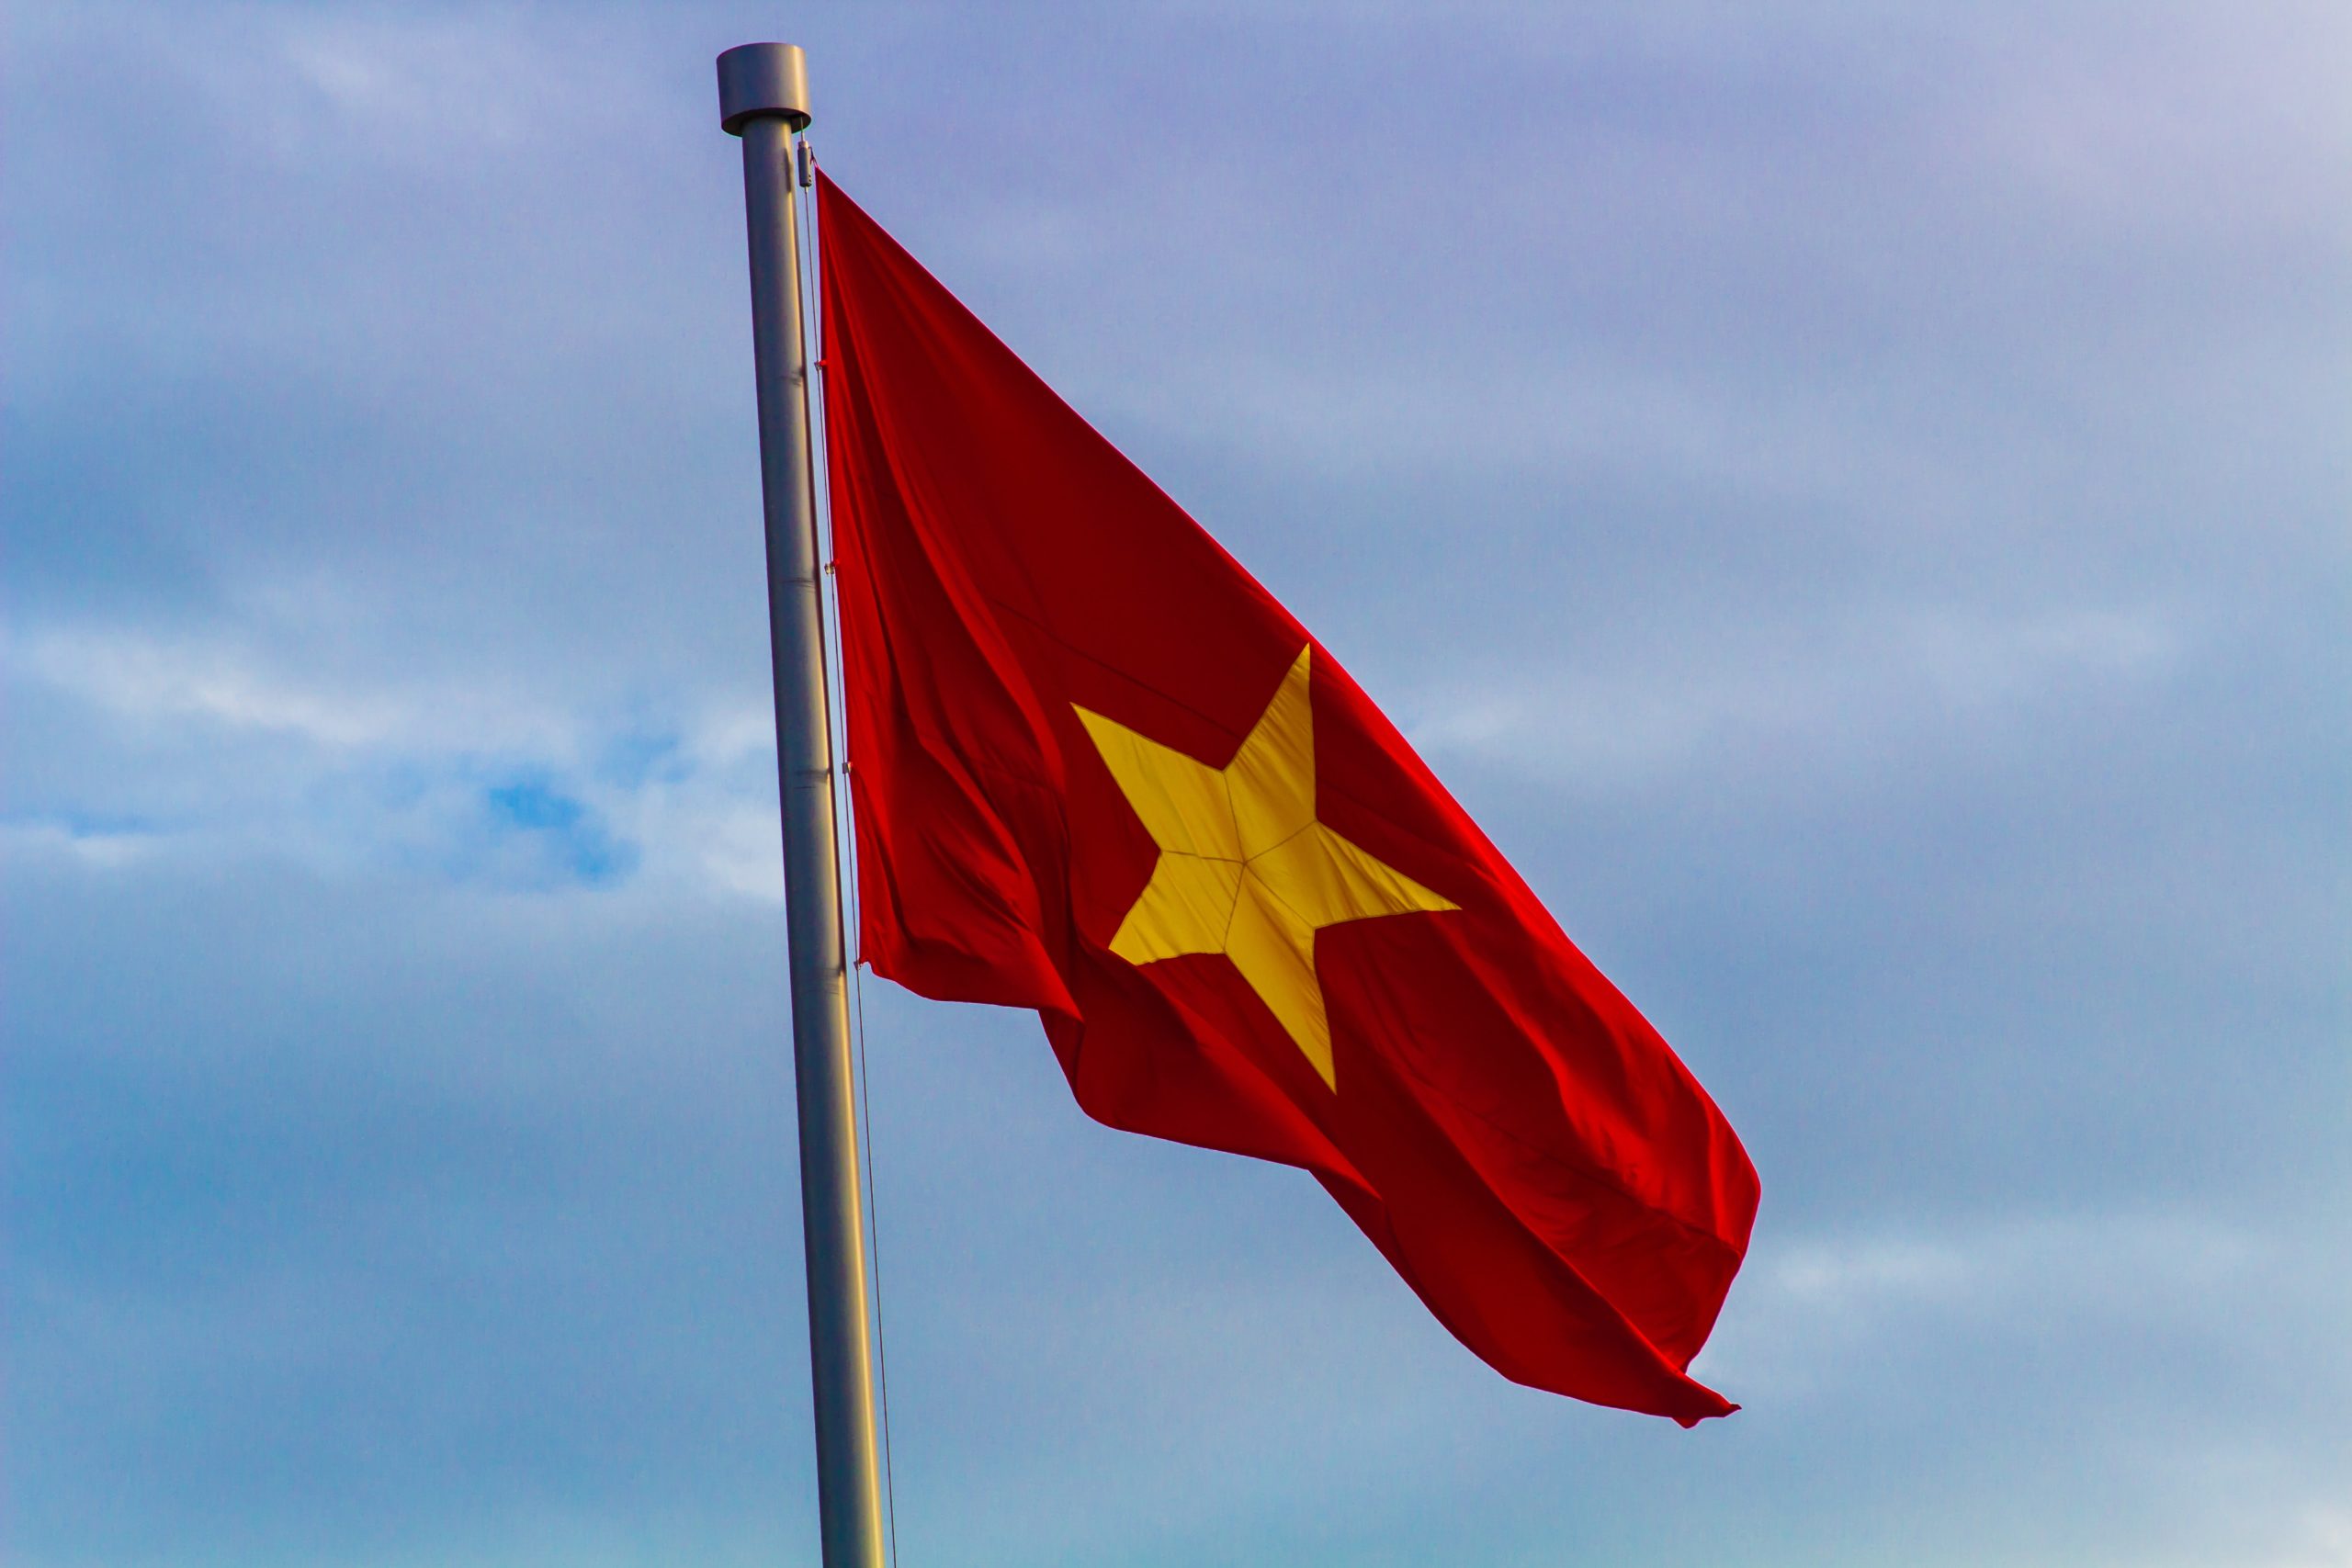 Các nhà đầu tư kỳ vọng sẽ có thêm nhiều công ty khởi nghiệp trong khu vực xuất hiện từ không gian kỹ thuật số của Việt Nam